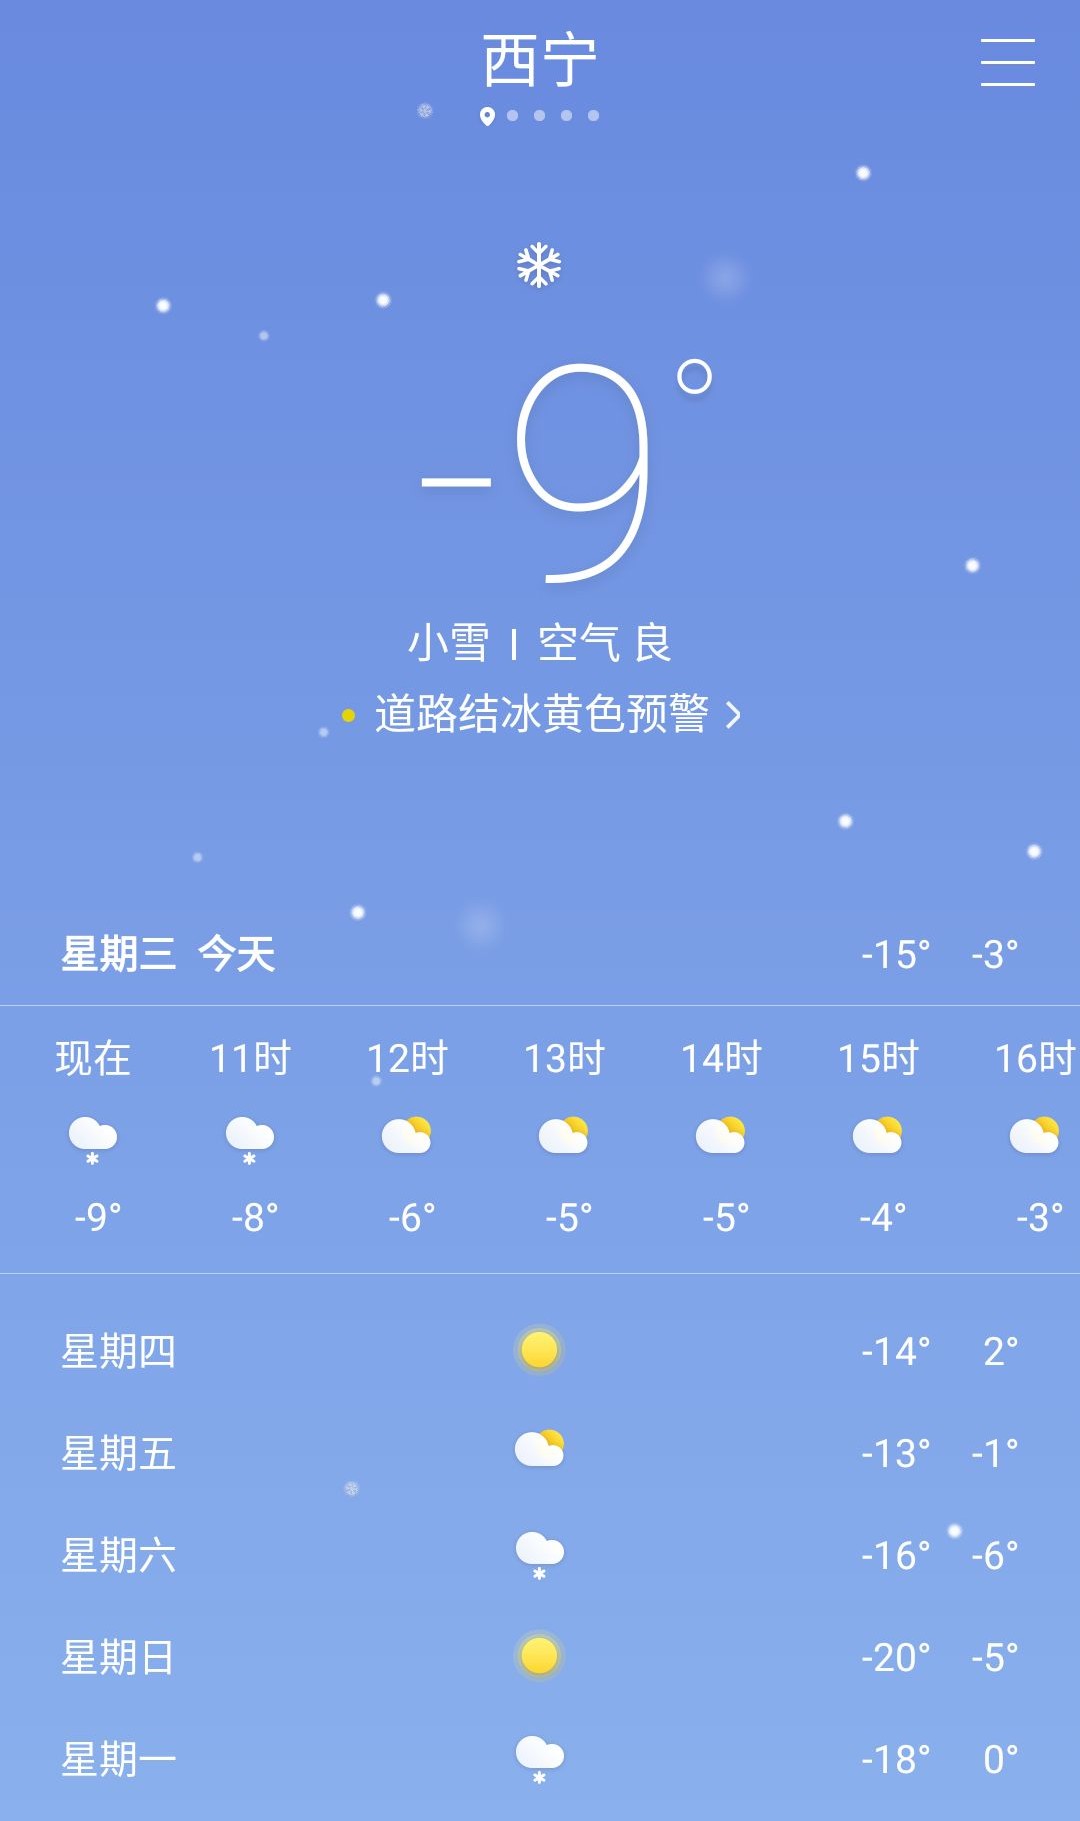 进入新年的第二天,西宁市天气开始变化,似乎又有降水的可